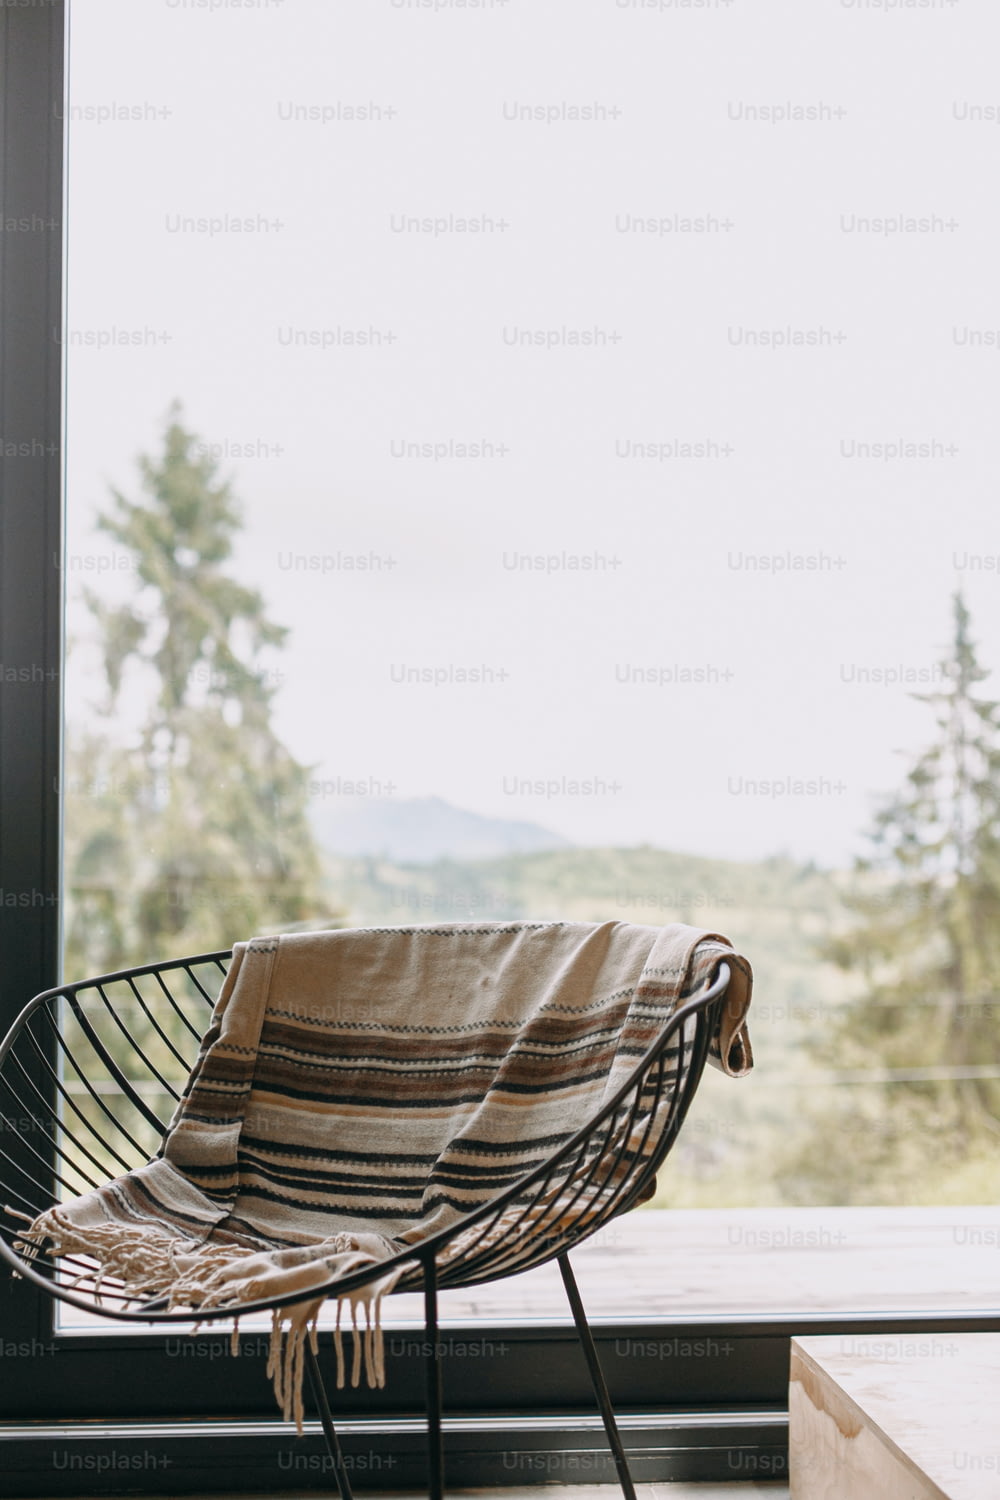 Chaise noire moderne avec couverture douillette et bois de chauffage sur support en métal sur fond de grandes fenêtres avec vue sur les montagnes. Des moments douillets, chaleureux et calmes en cabine à la saison froide.